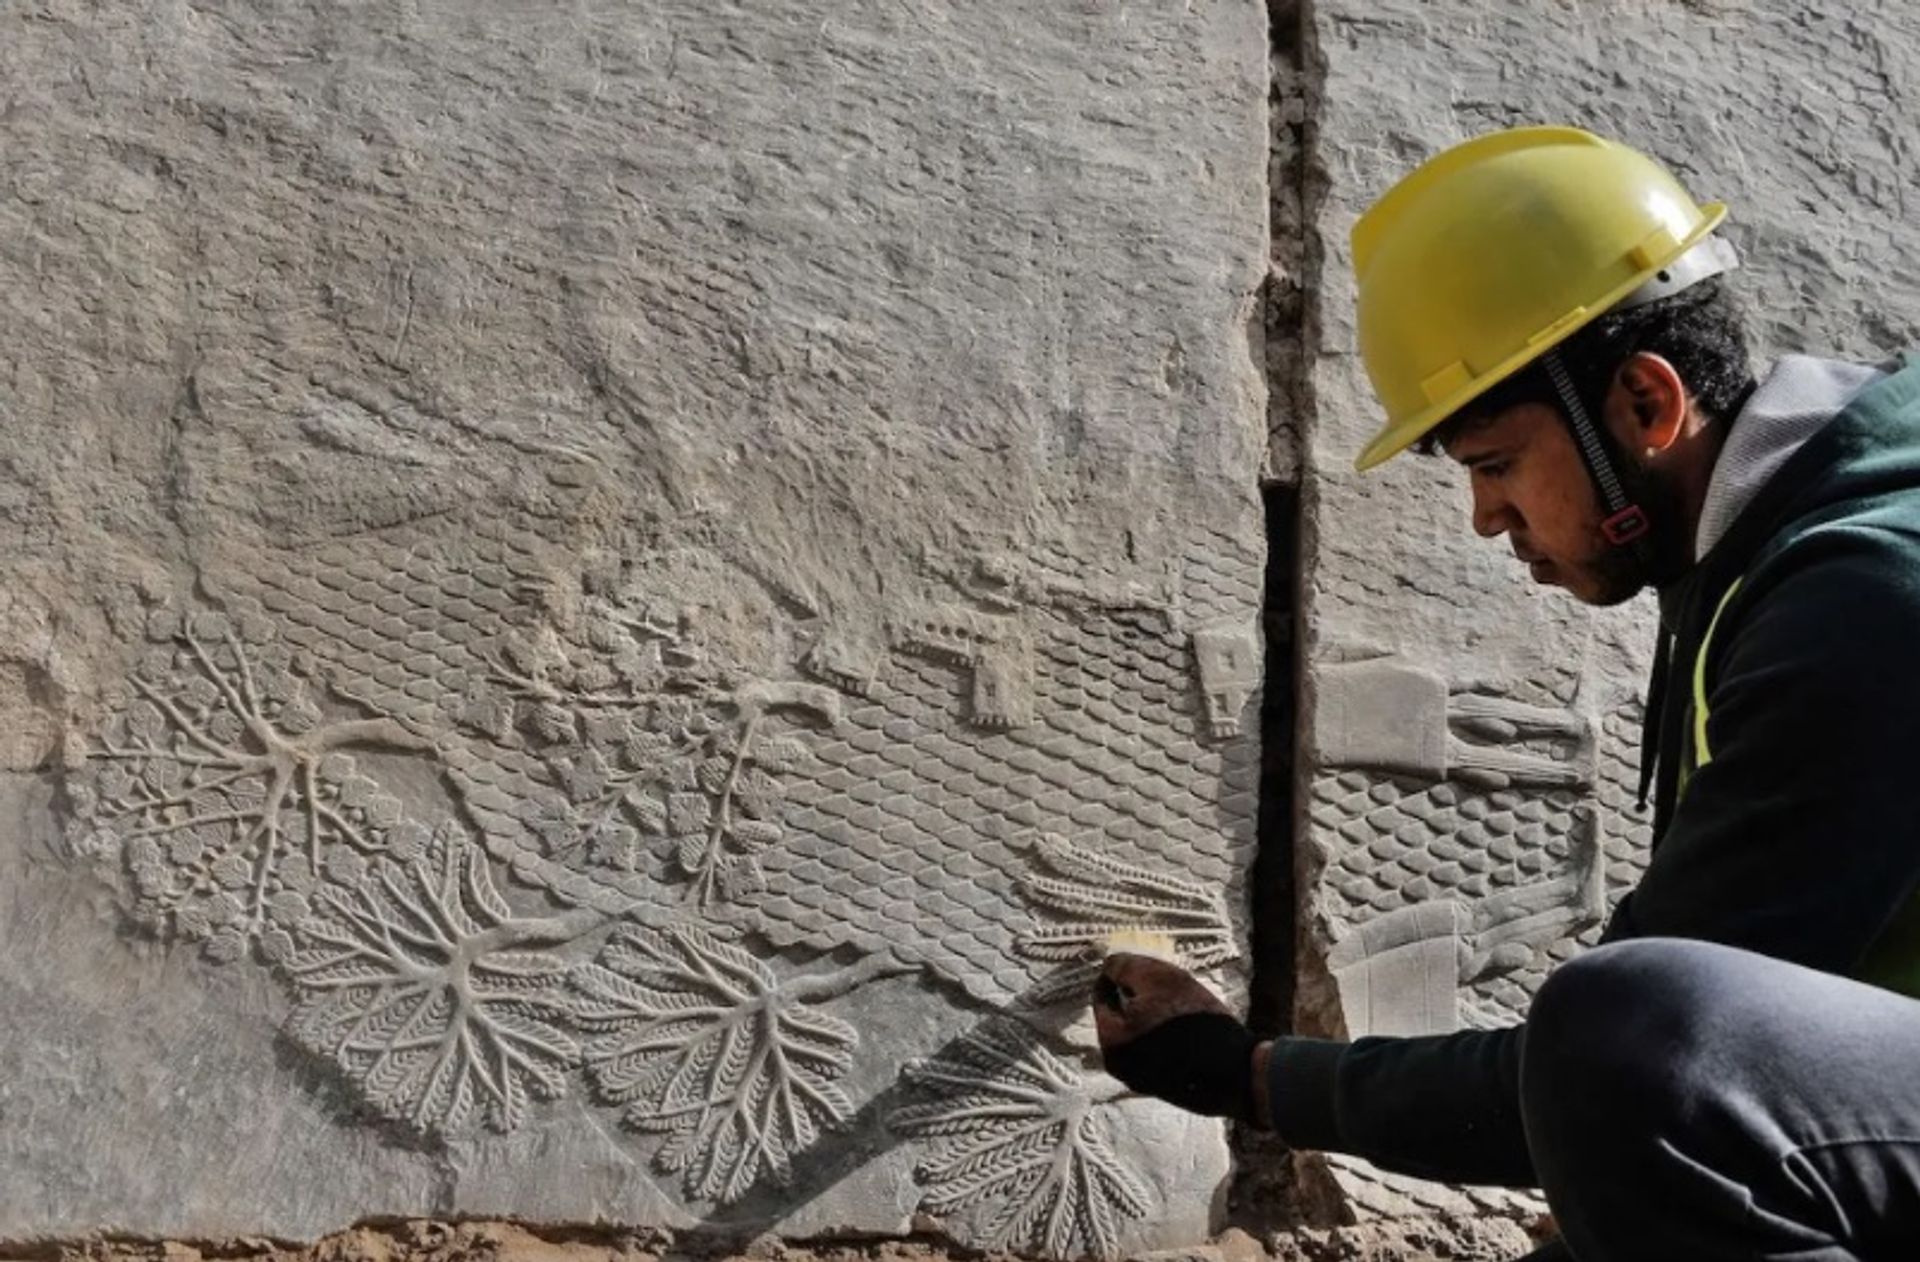 פועל עיראקי חושף תבליט חצוב בסלע שנמצא לאחרונה בשער משקי.

באדיבות "מועצת העתיקות והמורשת של עיראק"